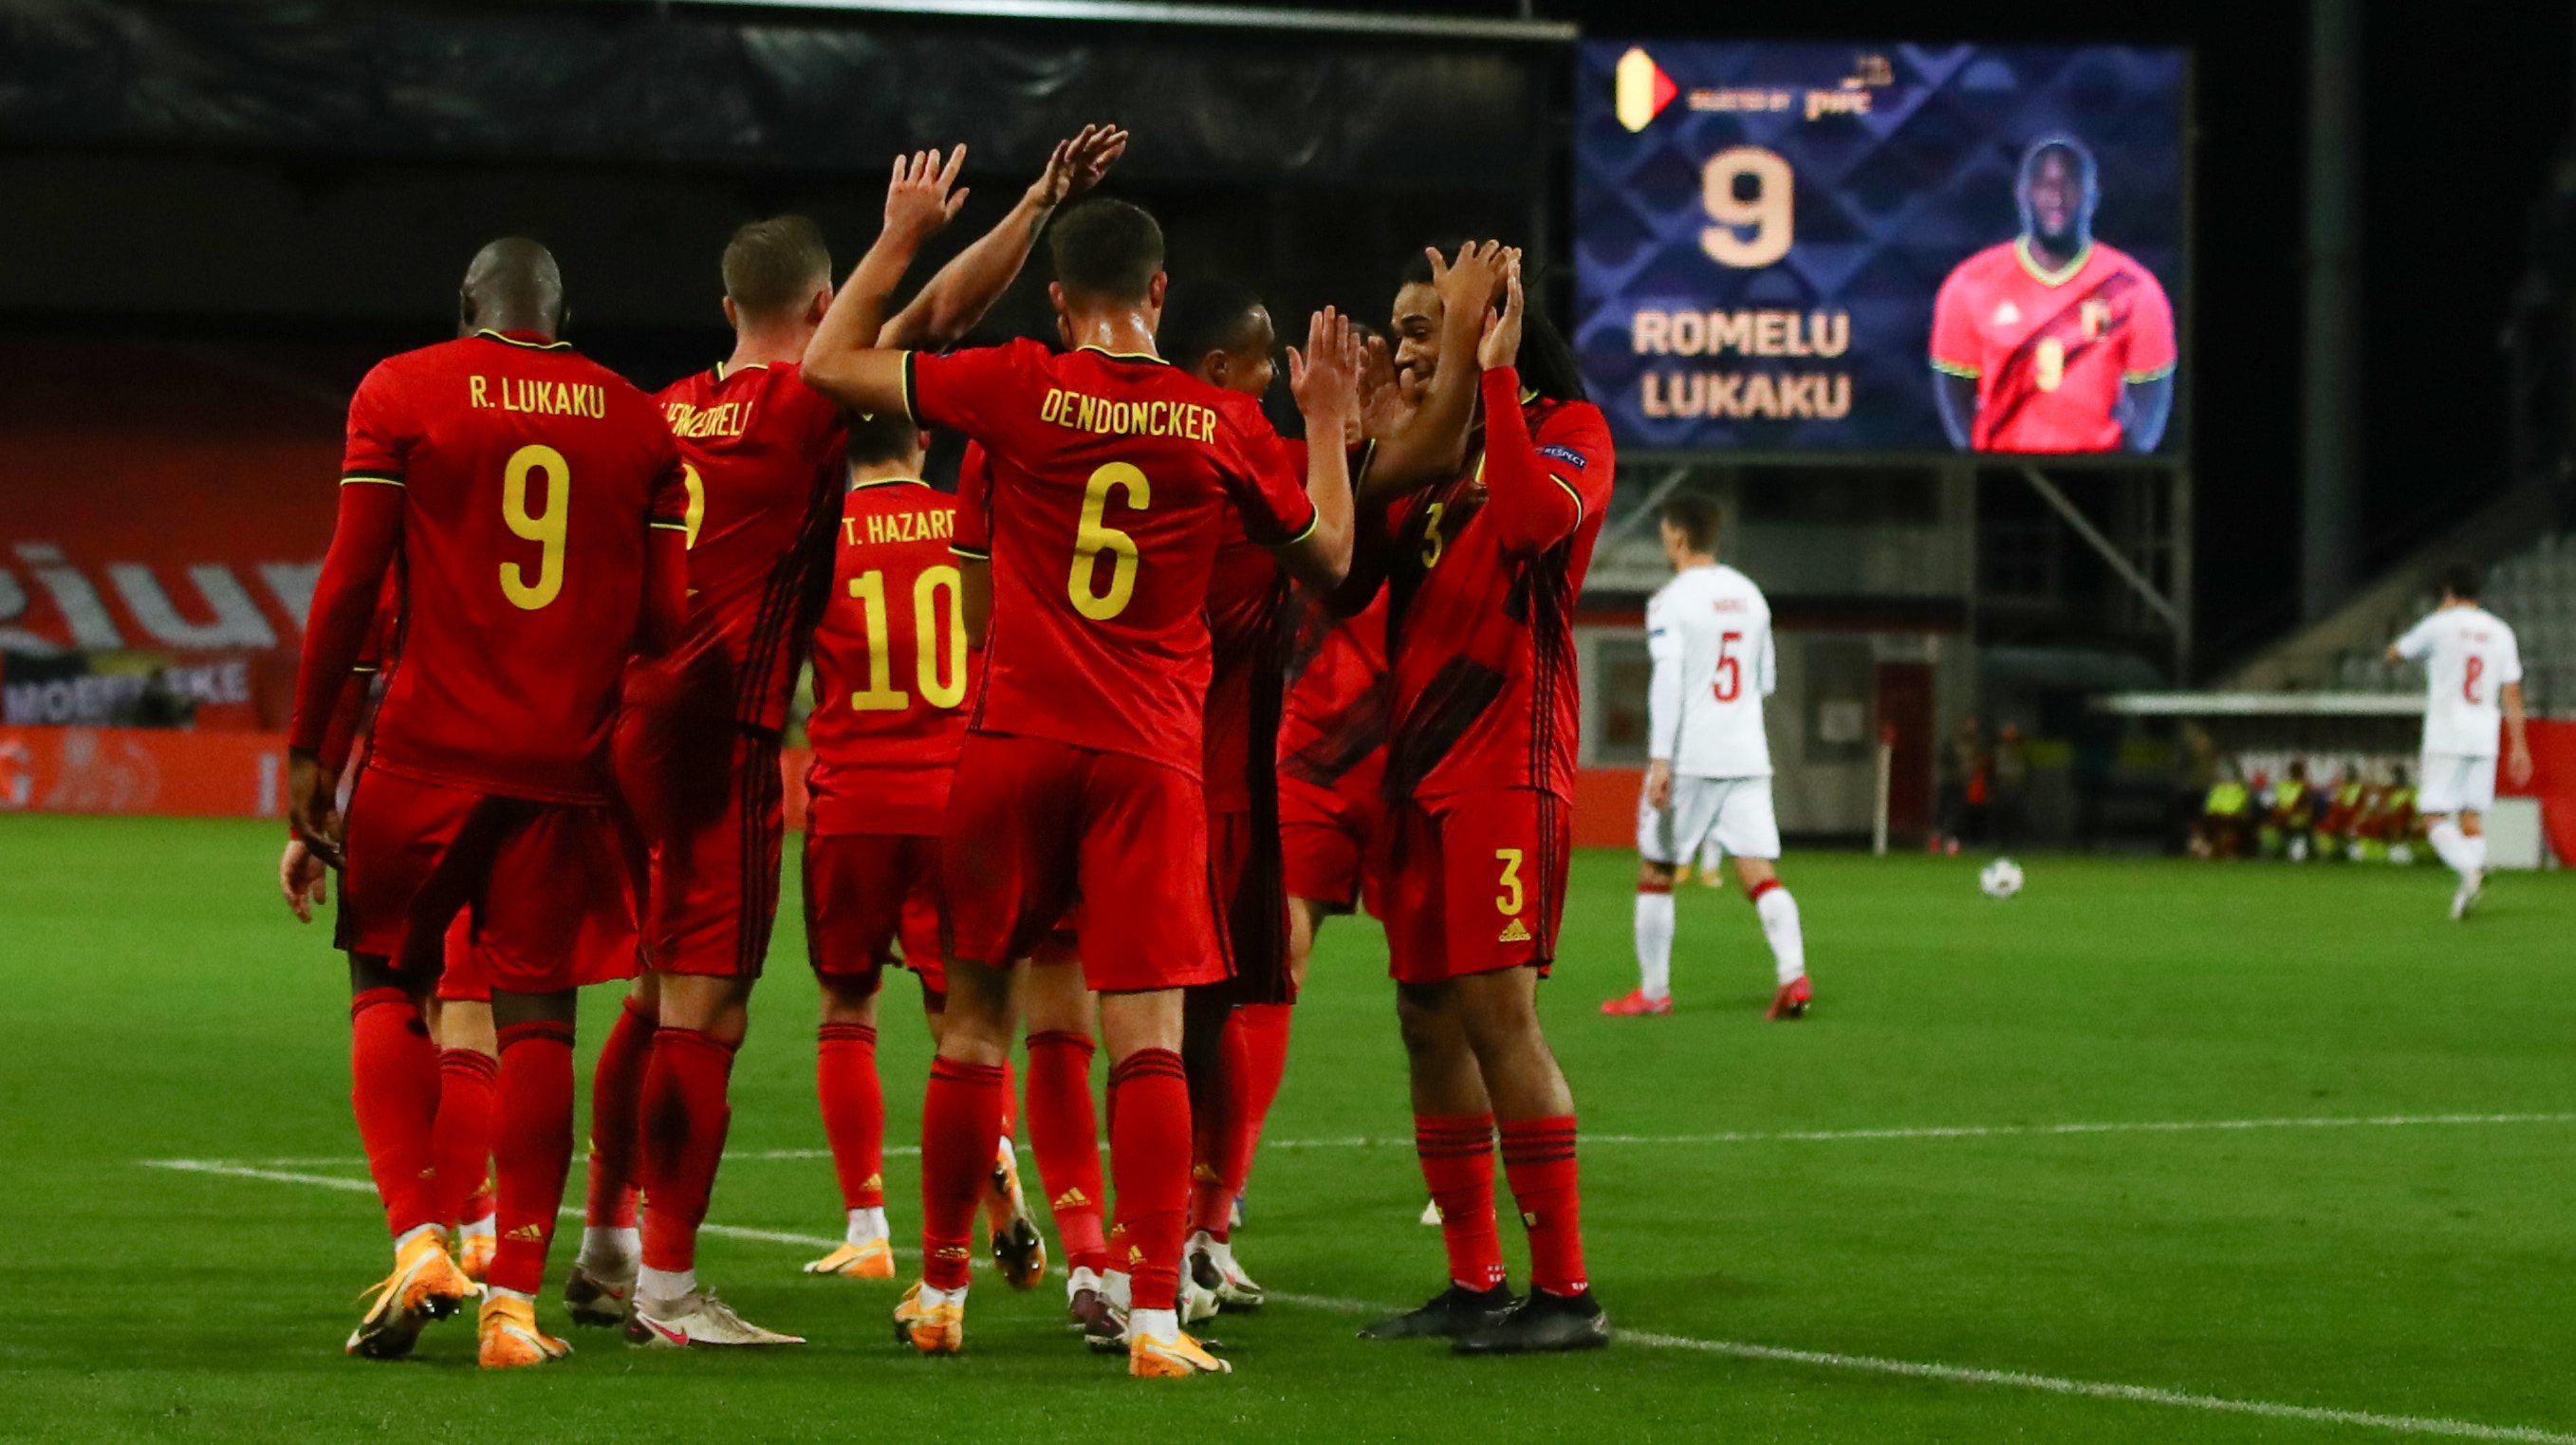 Belgium v Denmark - UEFA Nations League